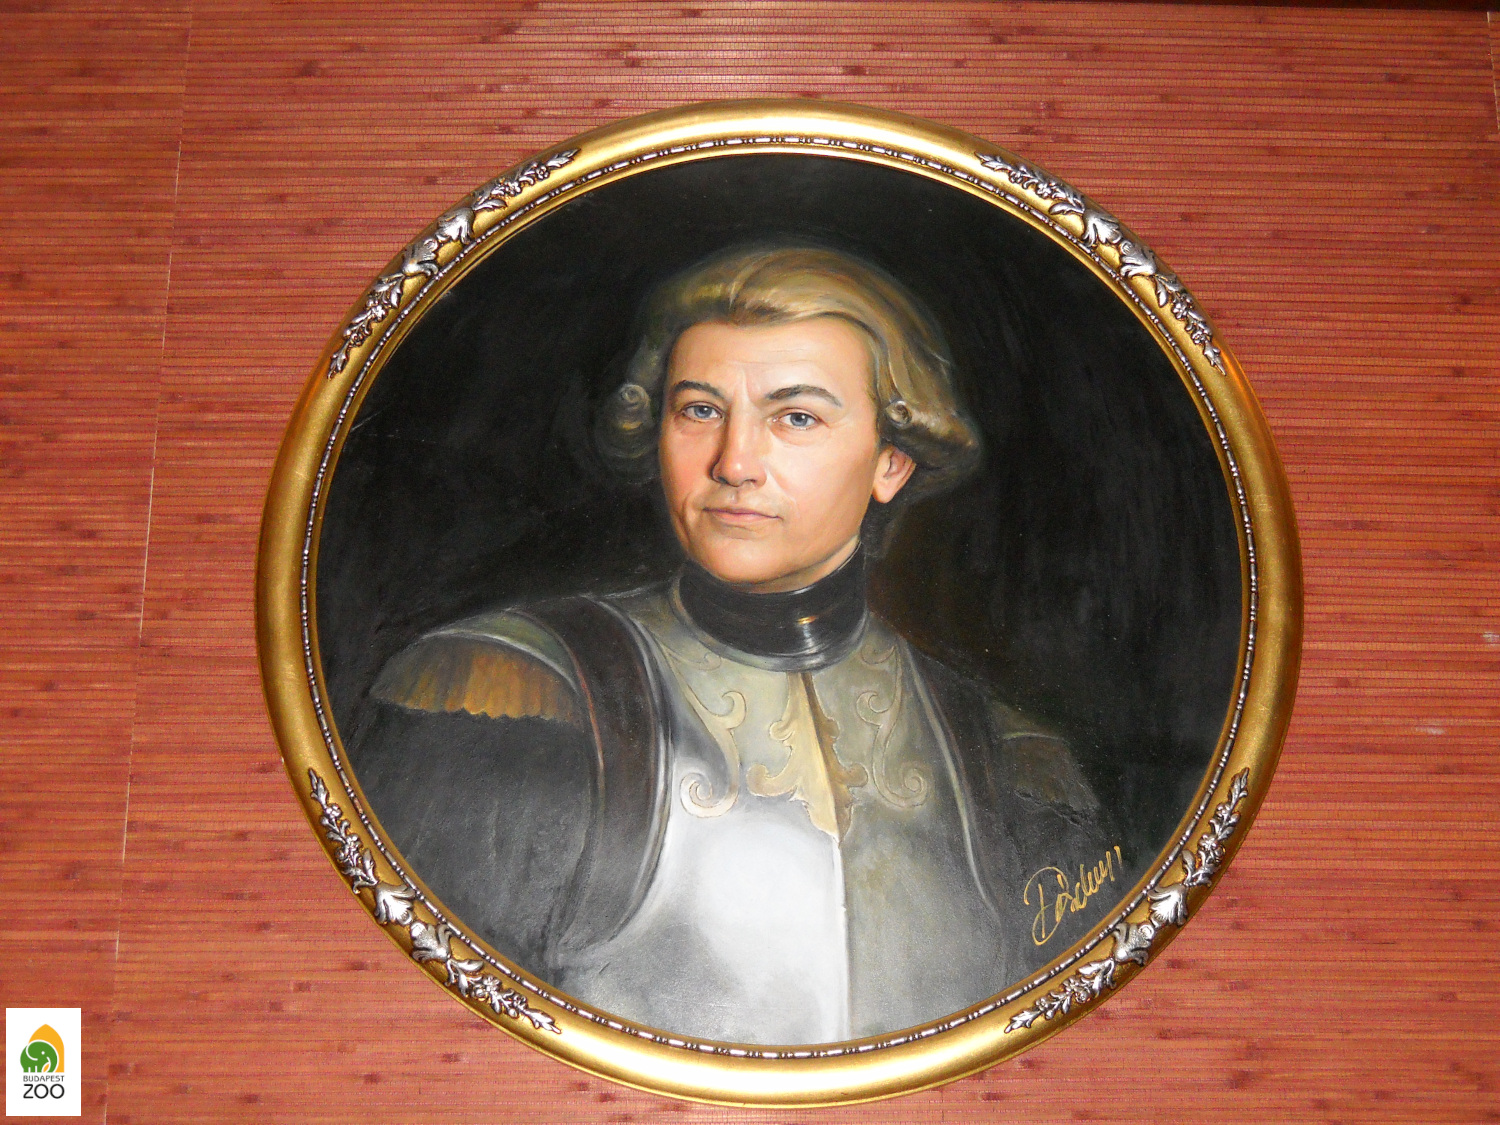 Benyovszky Móric (1741-1786), a híres világutazó